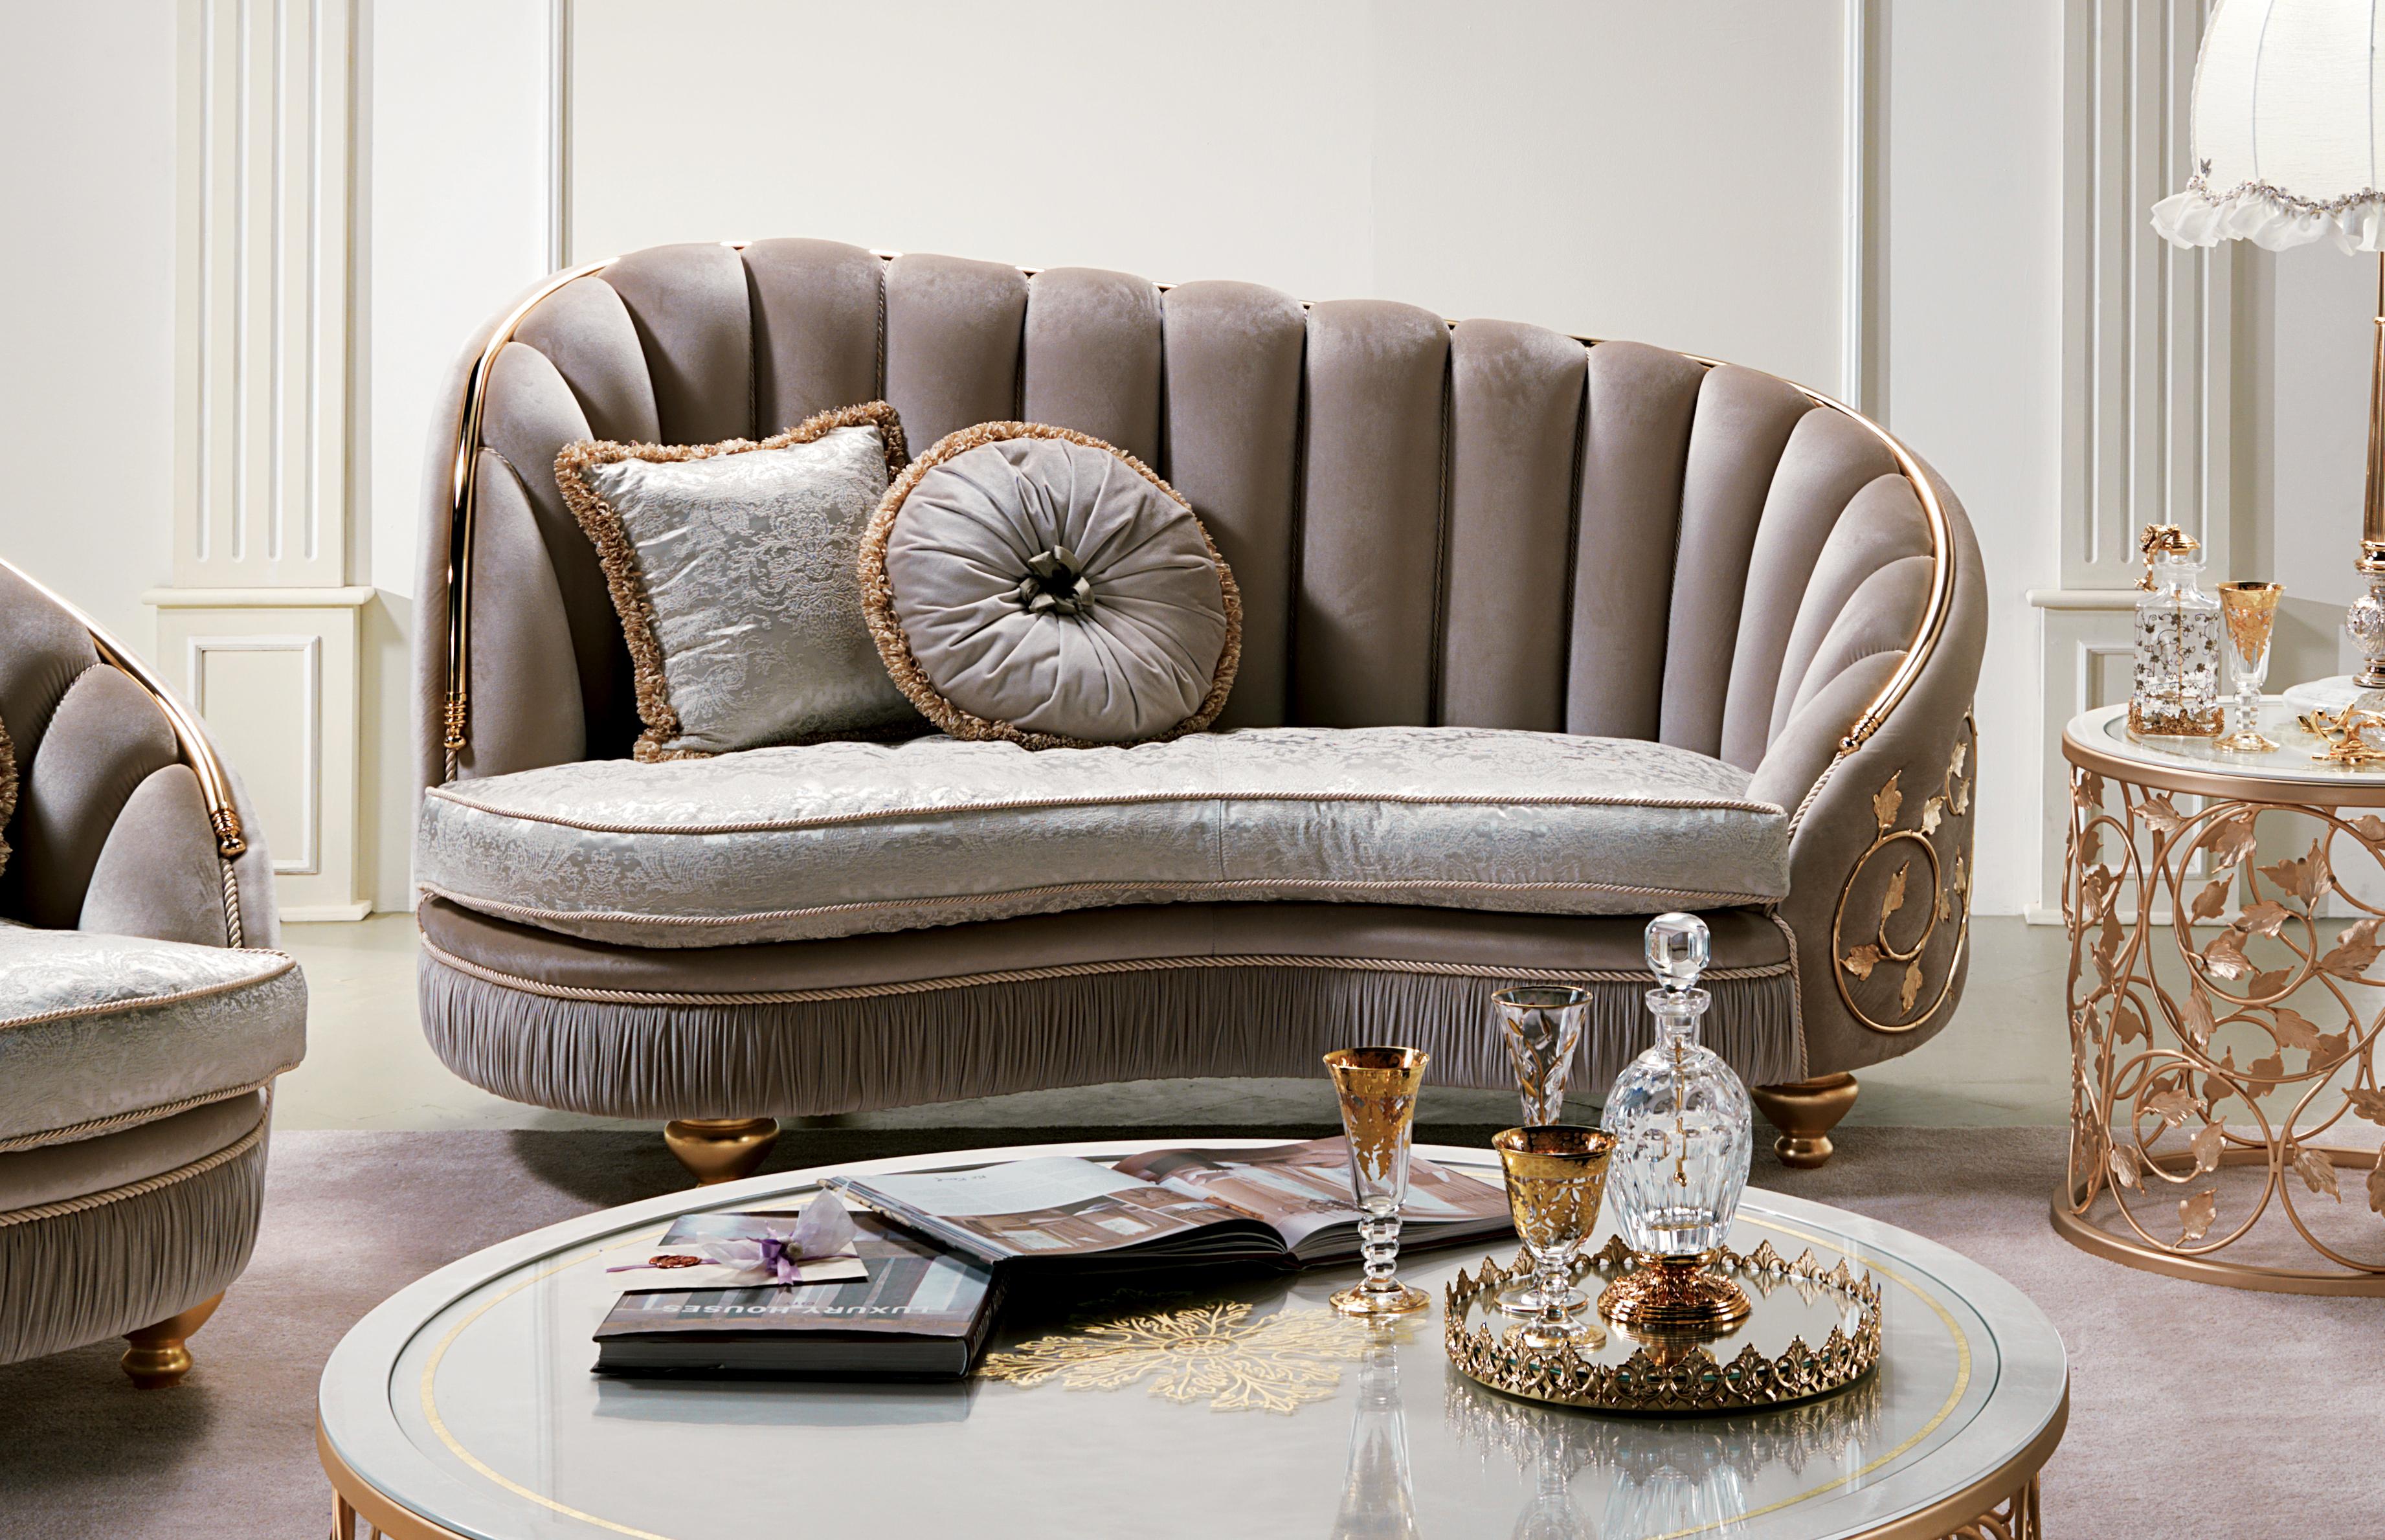 Das Sofa AQ032 verbindet gekonnt edle Materialien und hochwertige Handwerkskunst zu einem unvergleichlichen Seh- und Sitzerlebnis.

Das Besondere an diesem Sessel ist das schmiedeeiserne Blattwerk, das mit viel Geschick und Leidenschaft